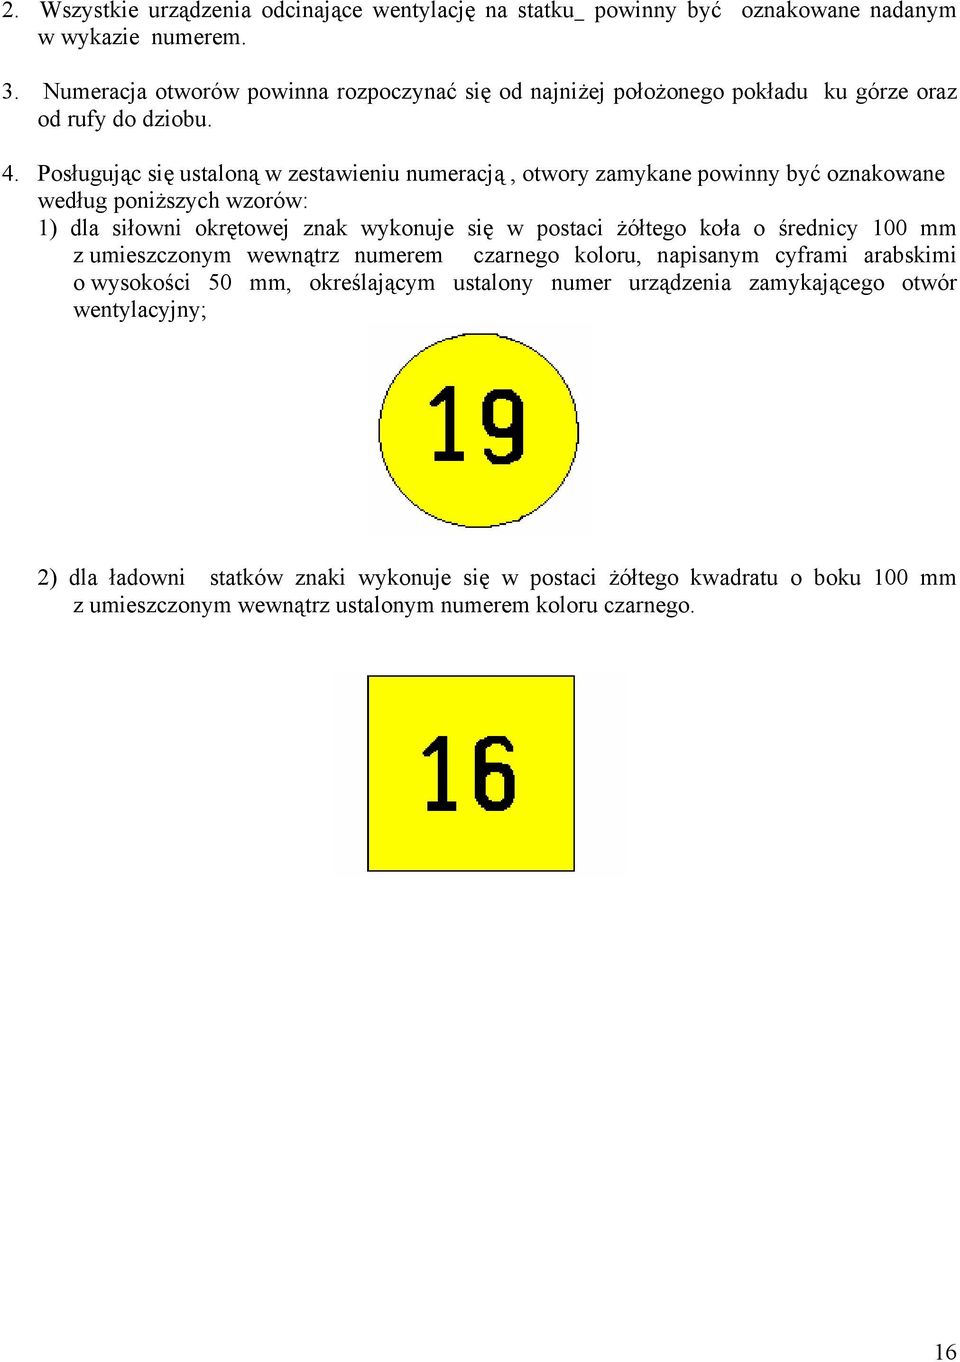 Posługując się ustaloną w zestawieniu numeracją, otwory zamykane powinny być oznakowane według poniższych wzorów: 1) dla siłowni okrętowej znak wykonuje się w postaci żółtego koła o